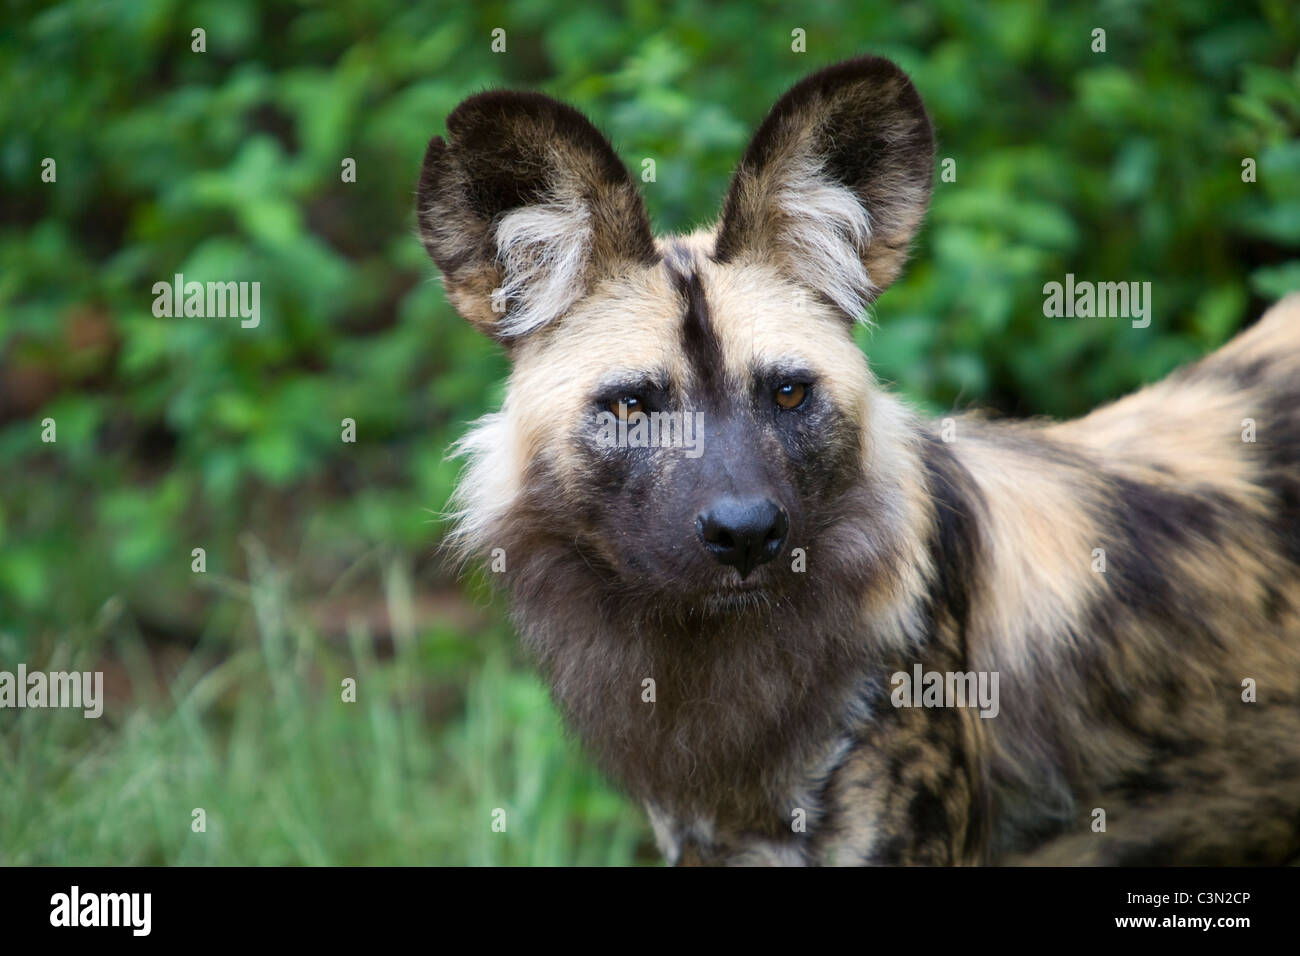 Sud Africa, Pretoria. Un africano cane selvatico, dipinse anche cane da caccia, Lycaon pictus. Cattività. Foto Stock